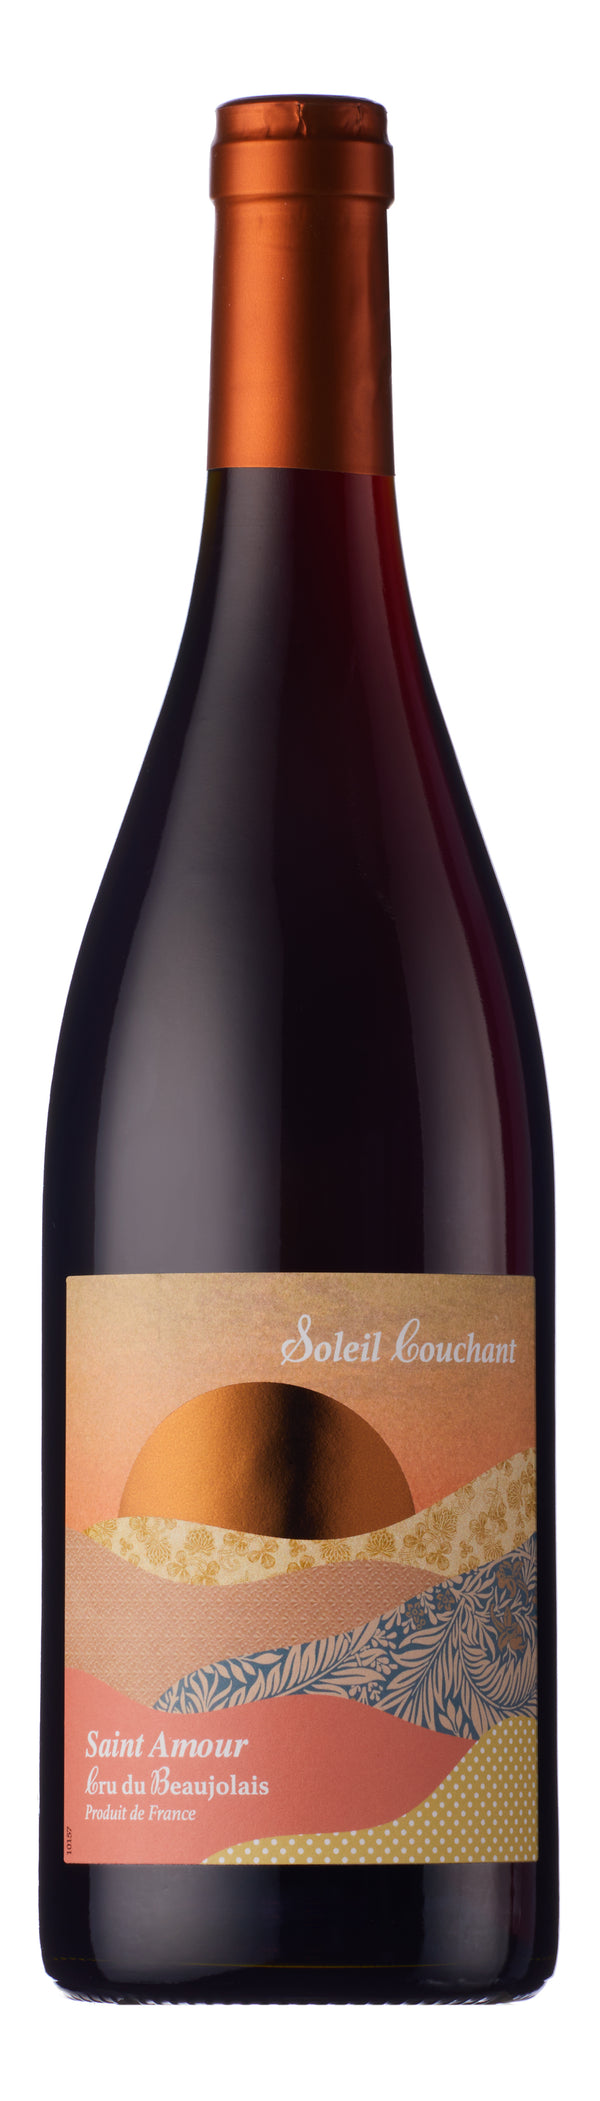 Soleil Couchant Saint-Amour Cru Beaujolais Red Wine 75cl x 6 Bottles